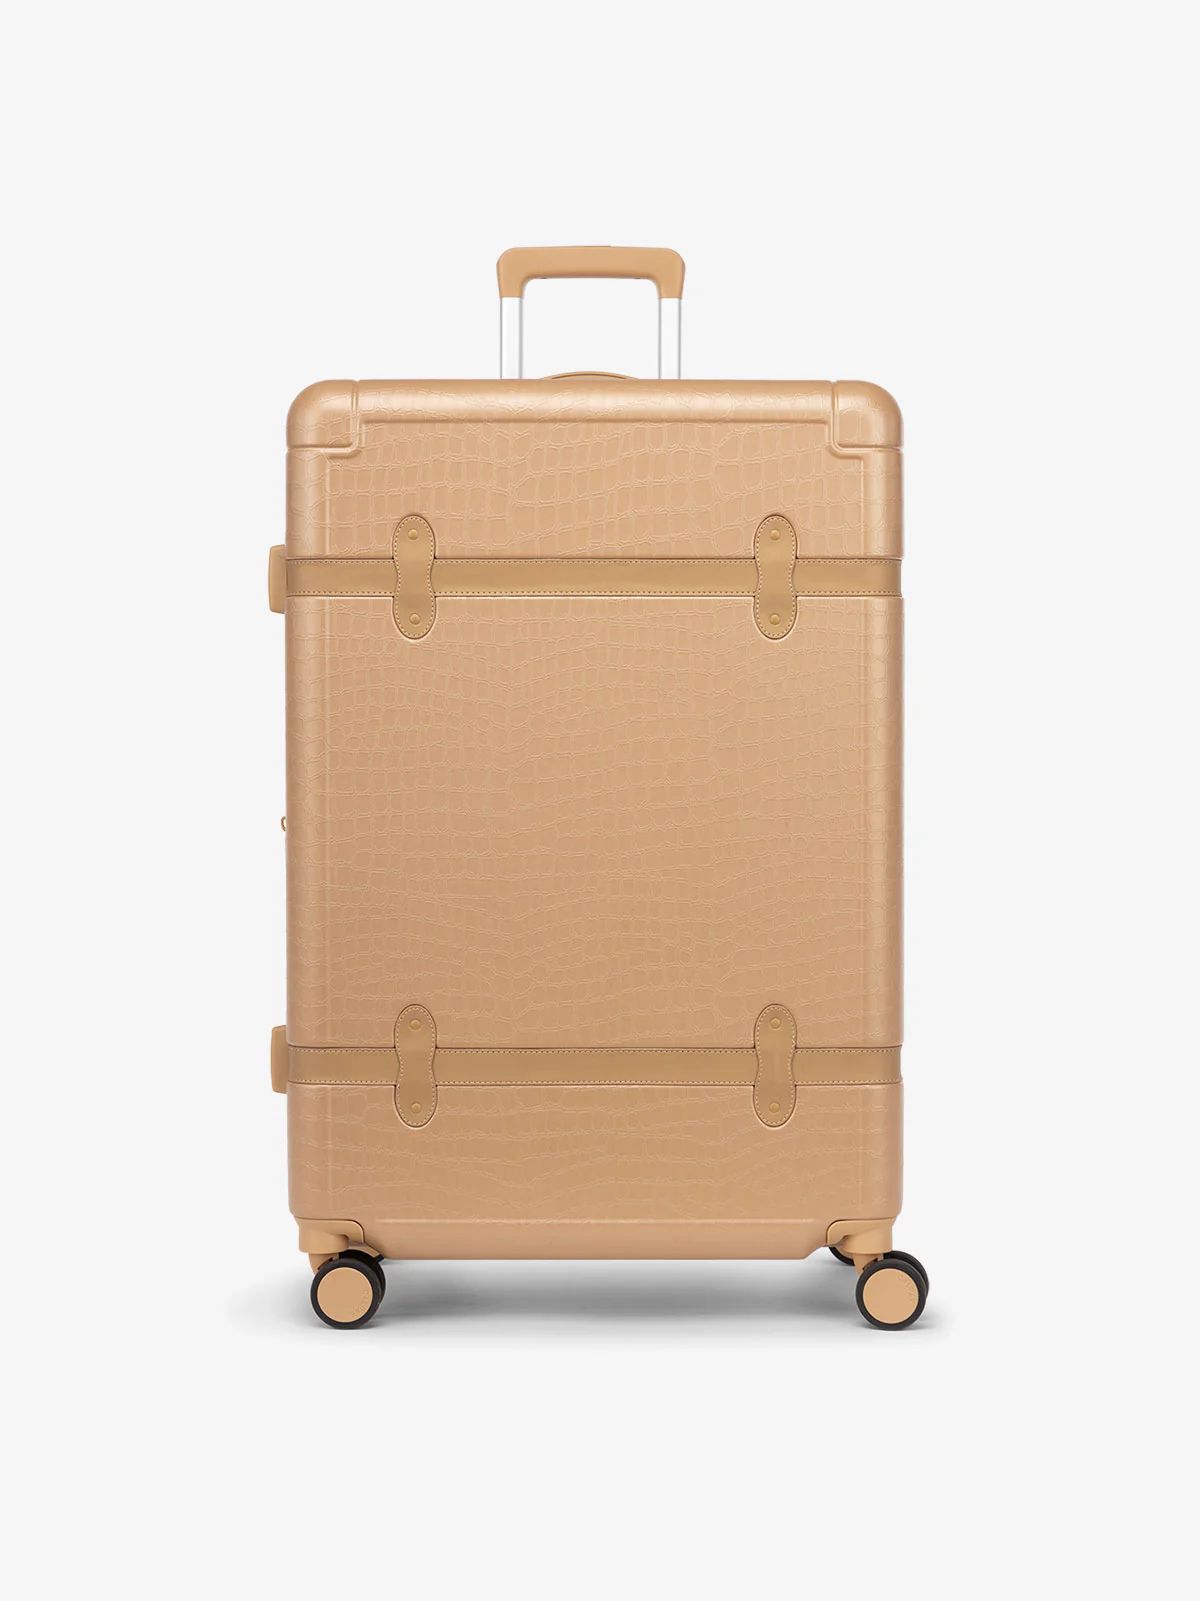 Trnk Large Luggage | CALPAK | CALPAK Travel